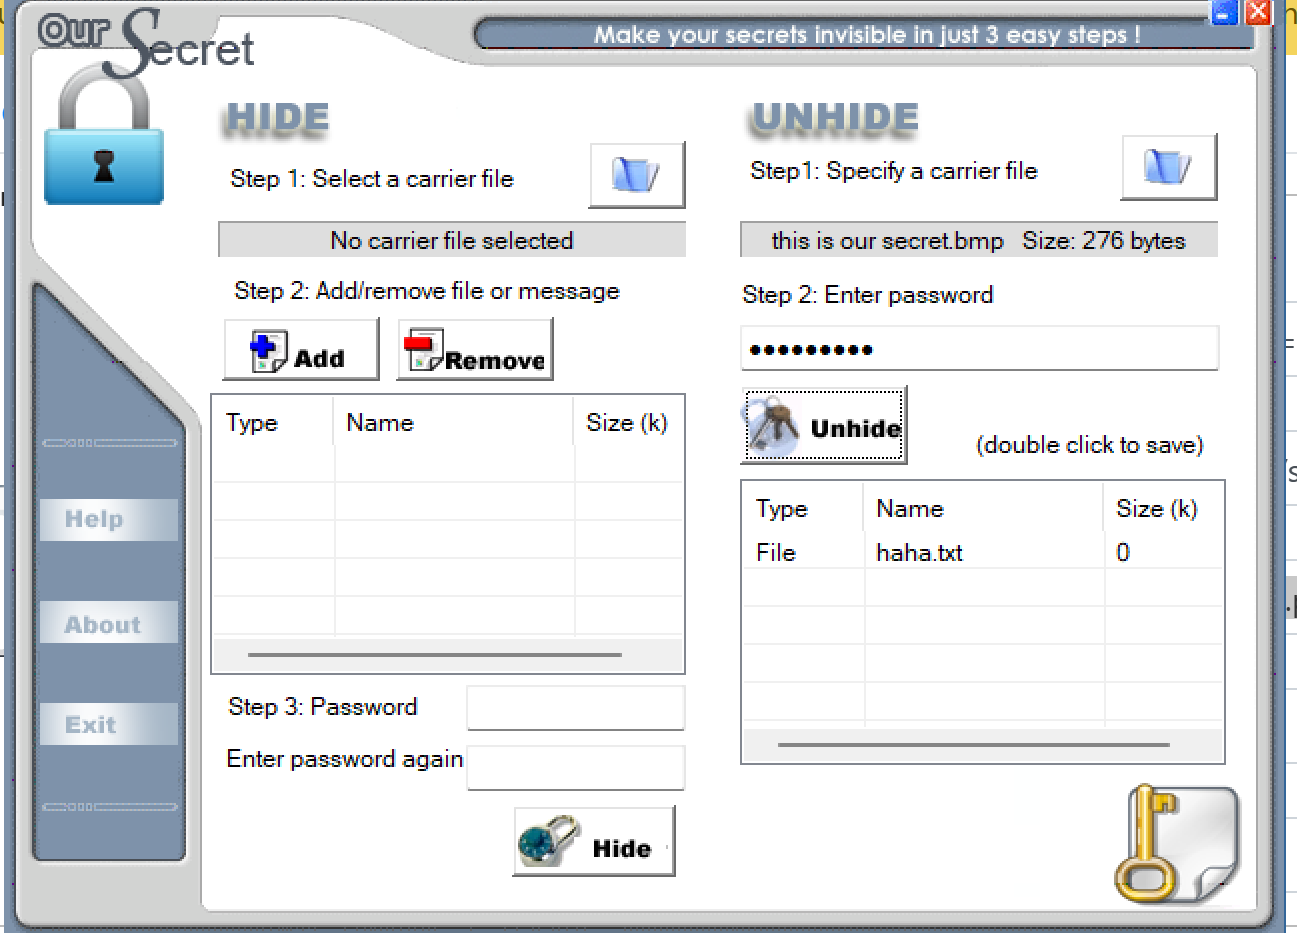 Secrets программа. Секретная программа. Our Secret 2.5.5.5. Программа шифрования discreet. Настройка Stegosuite.